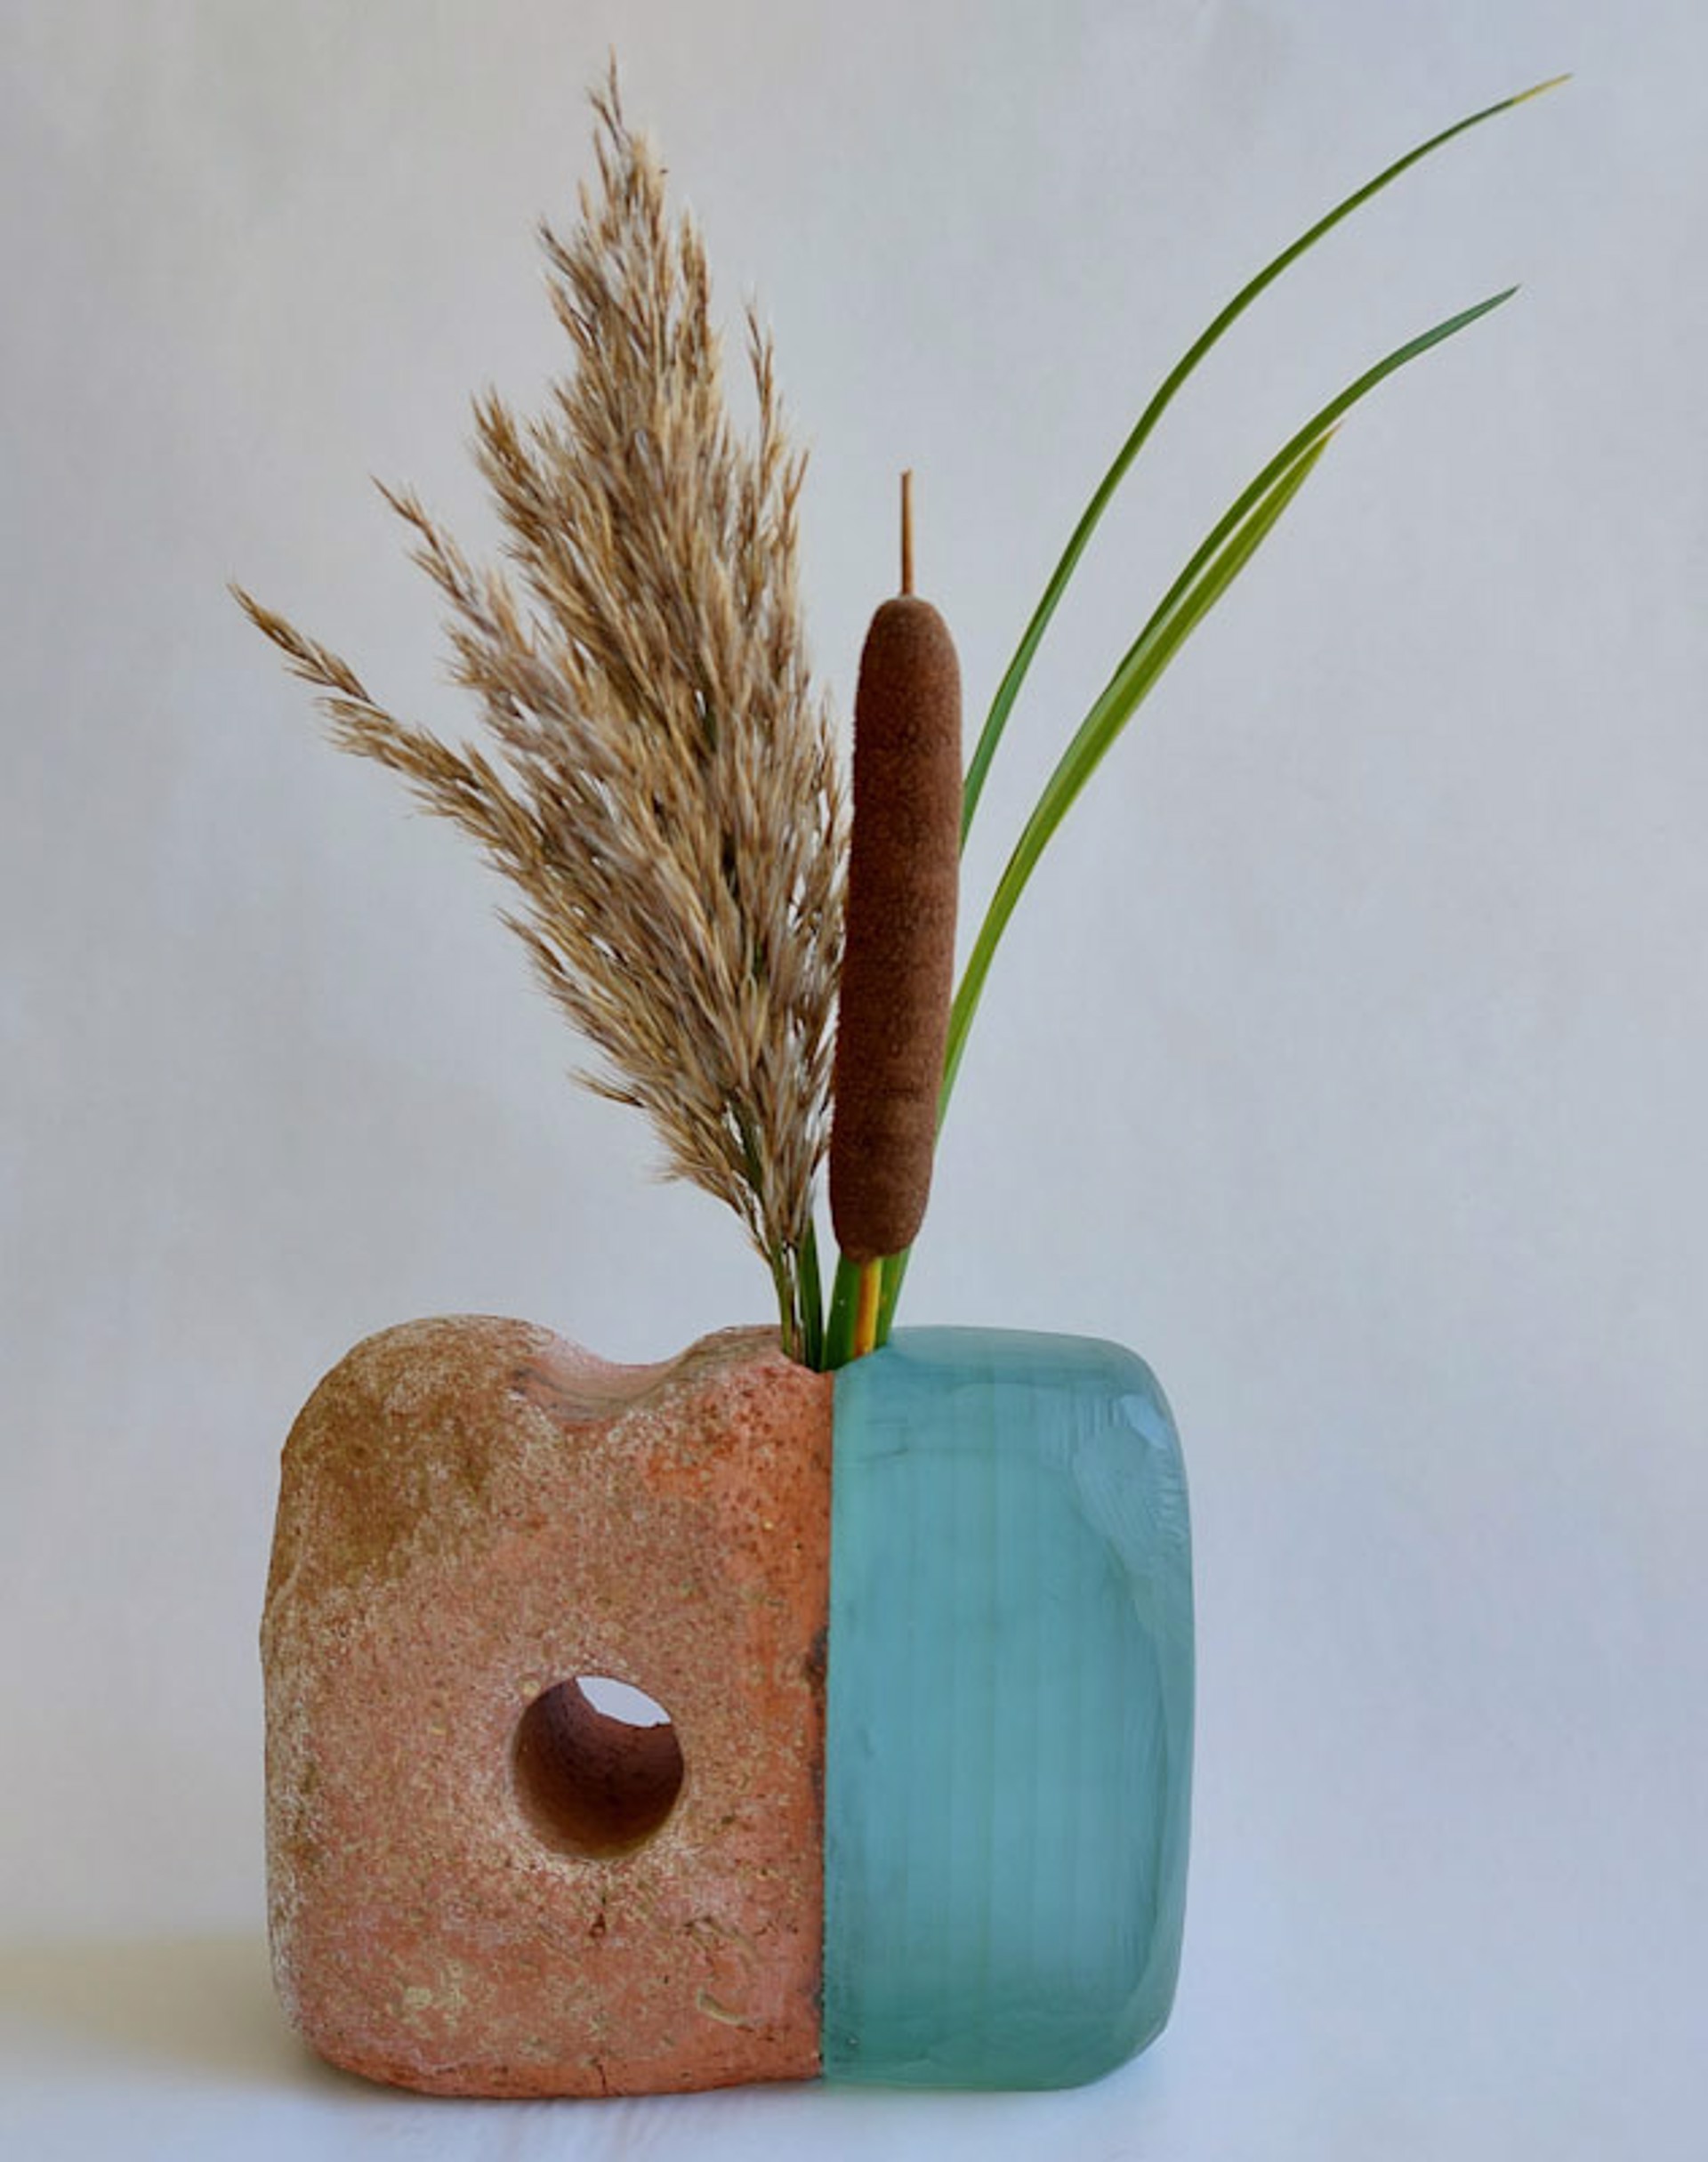 Cherry Beach Vase 1 by Christy Haldane